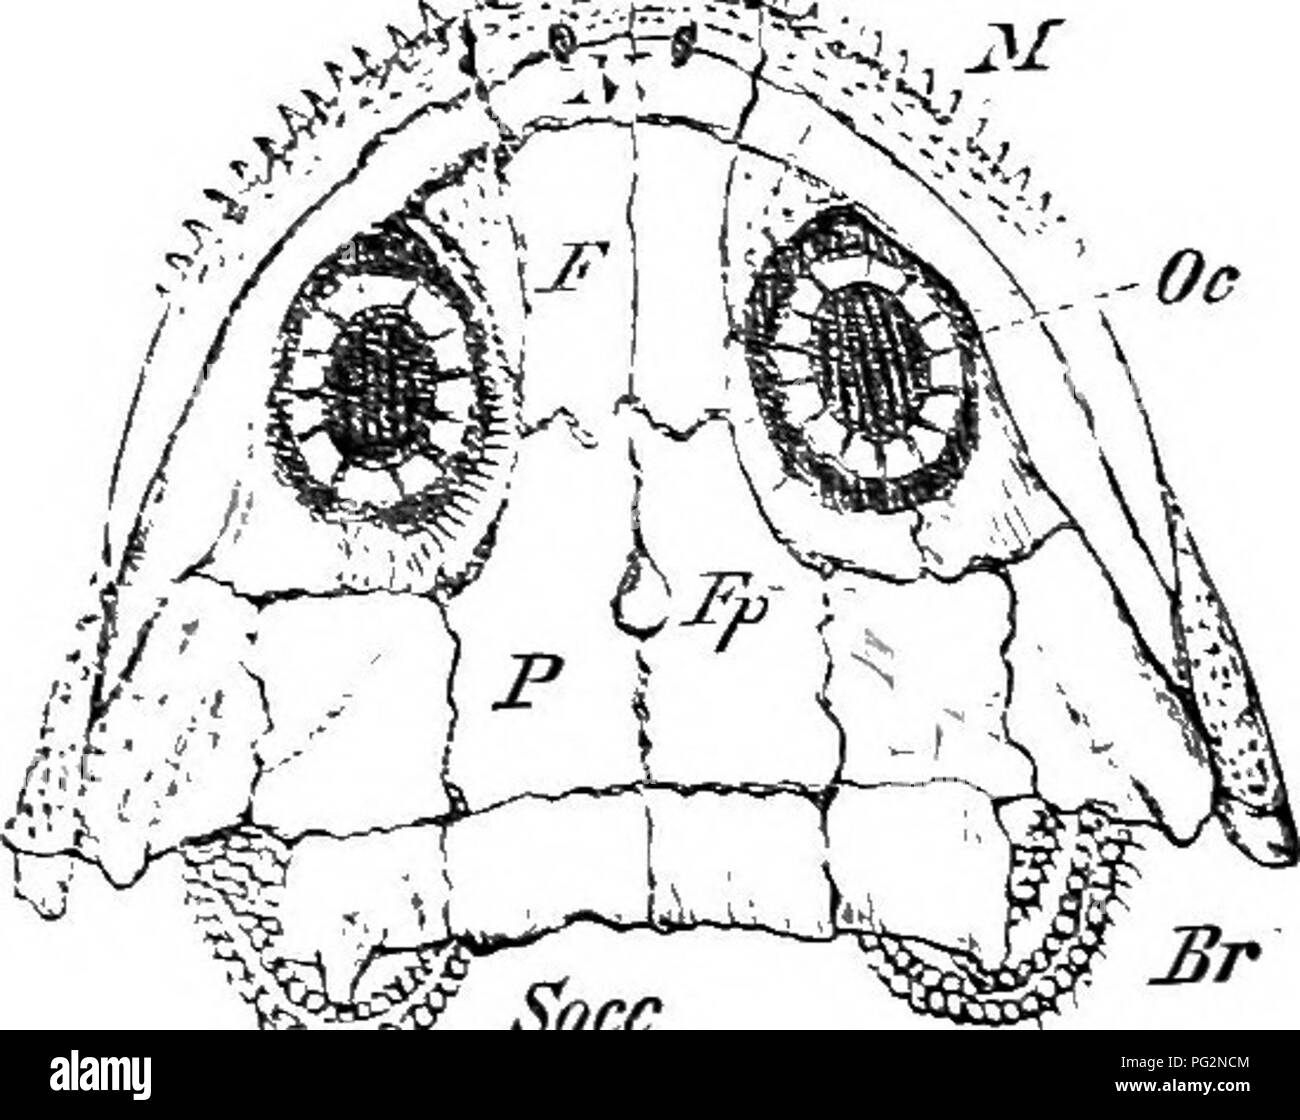 . Éléments de l'anatomie comparée des vertébrés. Anatomie, comparatif. Le crâne de l'ouverture d'Eustache. À l'exception de certaines petites régions (fenestrse) sur la face dorsale, le crâne de Aniu-un Forms un com- K â fc''.- !;5*# .J44, ^. 'Â ^^^ Socc Fn :. 6S.âRestoeation du crâne d'un Stegocephalax (du Carbonifère de la Bohême). (Après), Fritsch. Pmx prémaxillaire ; J/, maxillaire ; X, nasal ; Xn, narine ; - ?', frontal ; Pf, P ; préfrontal, pariétale ; Fp, Trou pariétal ; Socc, supraoccipital ; Br, appareil branchial : Oc, anneau sclérotique (os orbital.) ], la boîte cartilagineuse complète ethm Banque D'Images